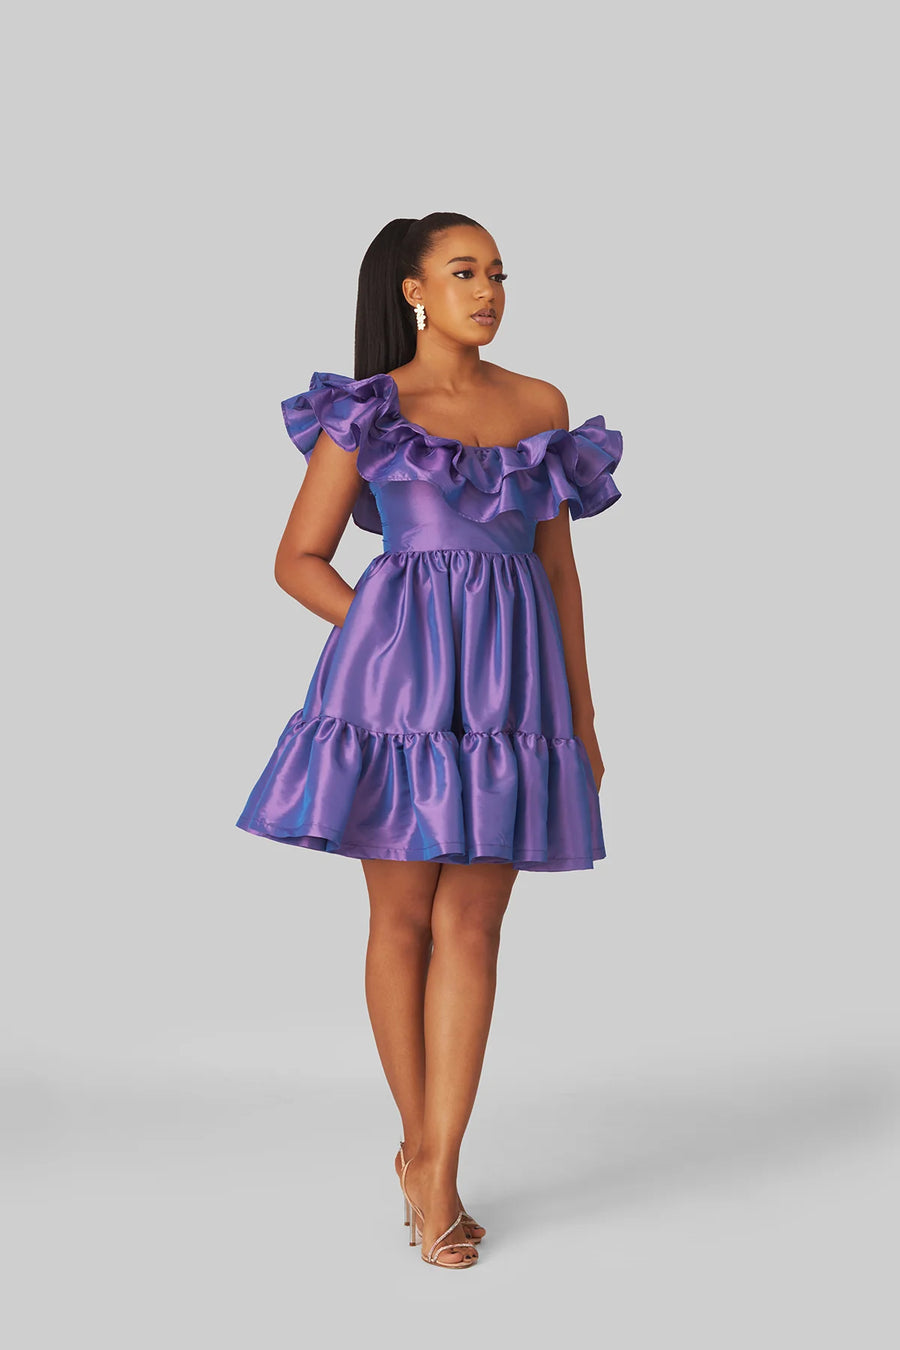 M.O.T Fara Dress, Mini dress with frills